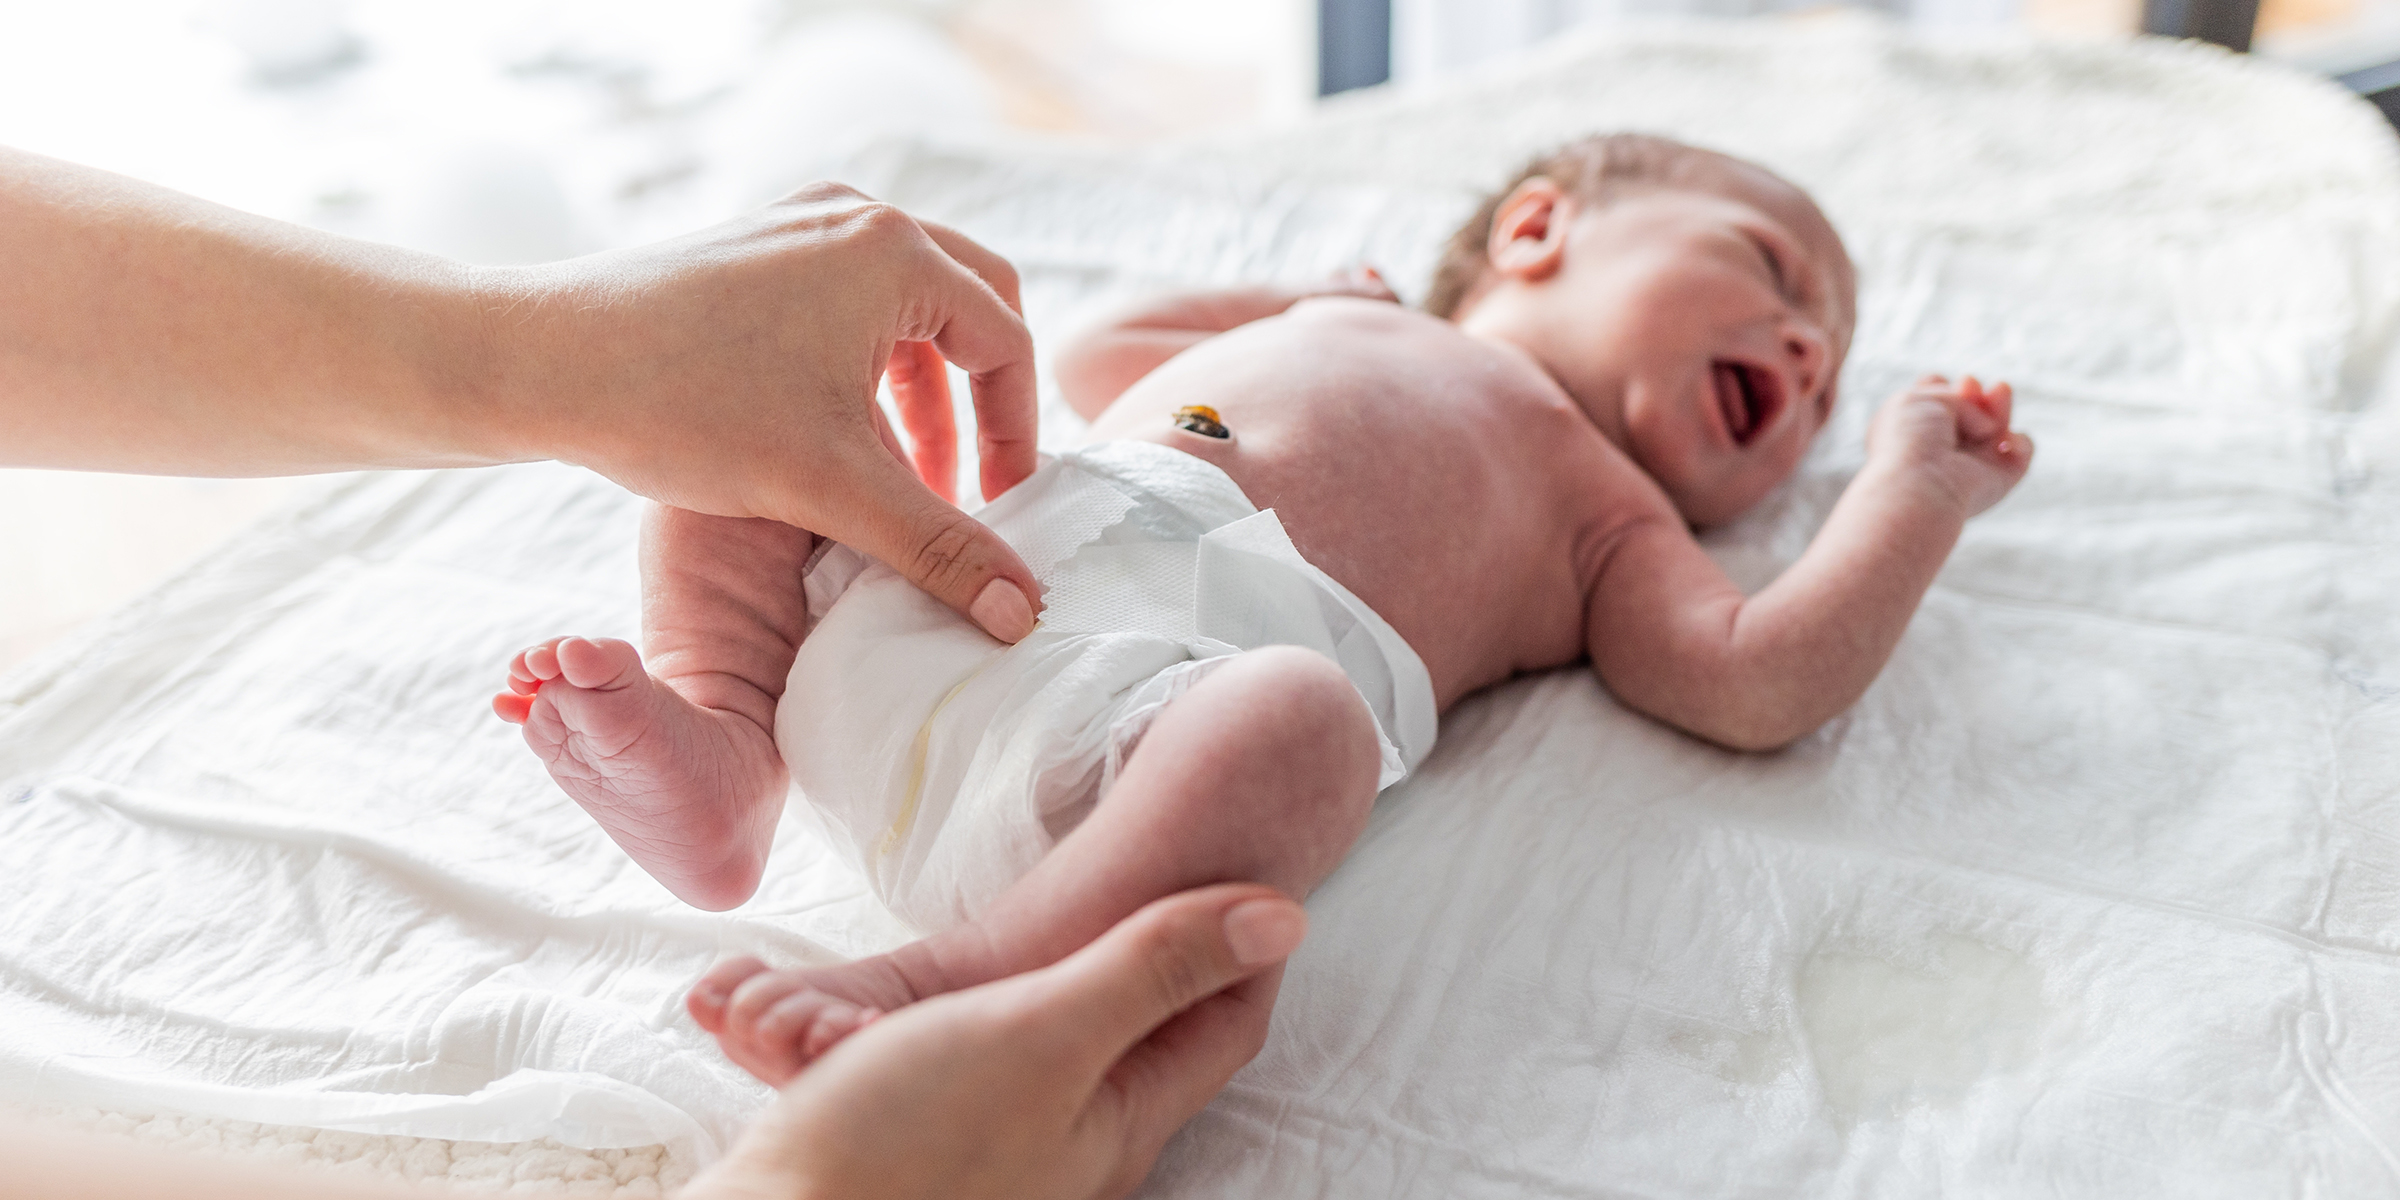 Persona cambiando el pañal a un bebé | Foto: Shutterstock